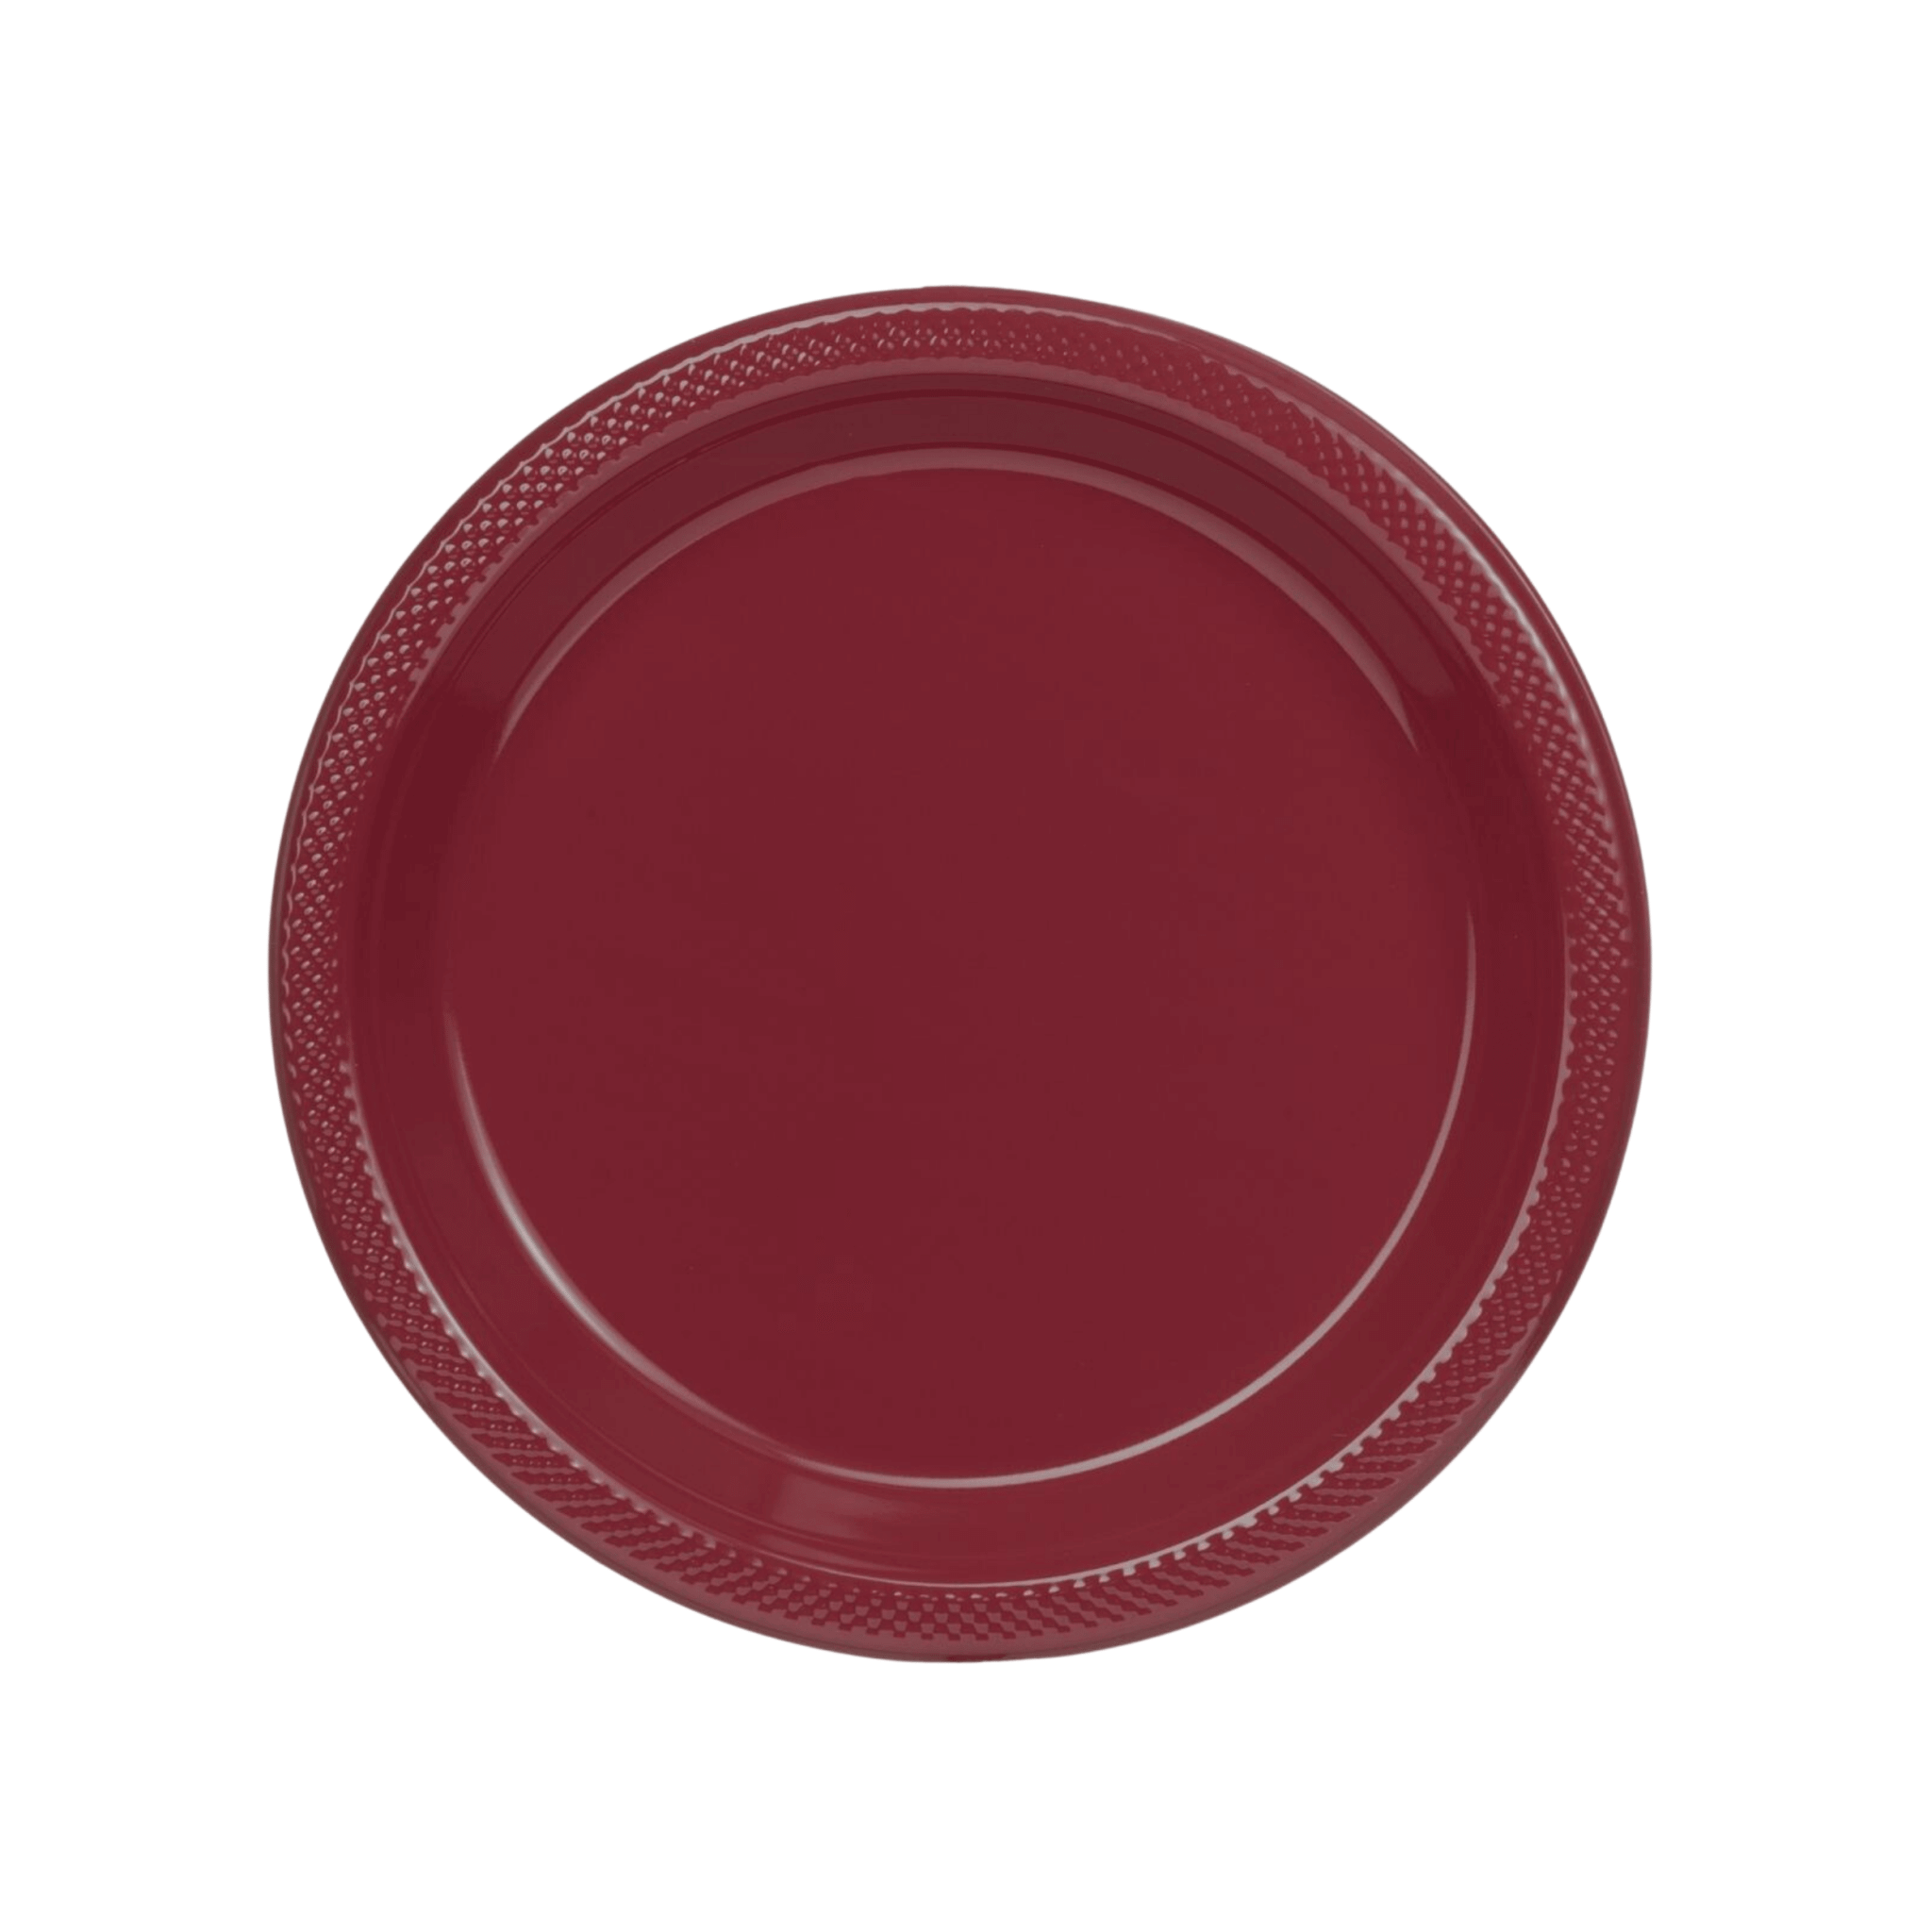 7" | Burgundy Plastic Plates | 600 Count - Yom Tov Settings